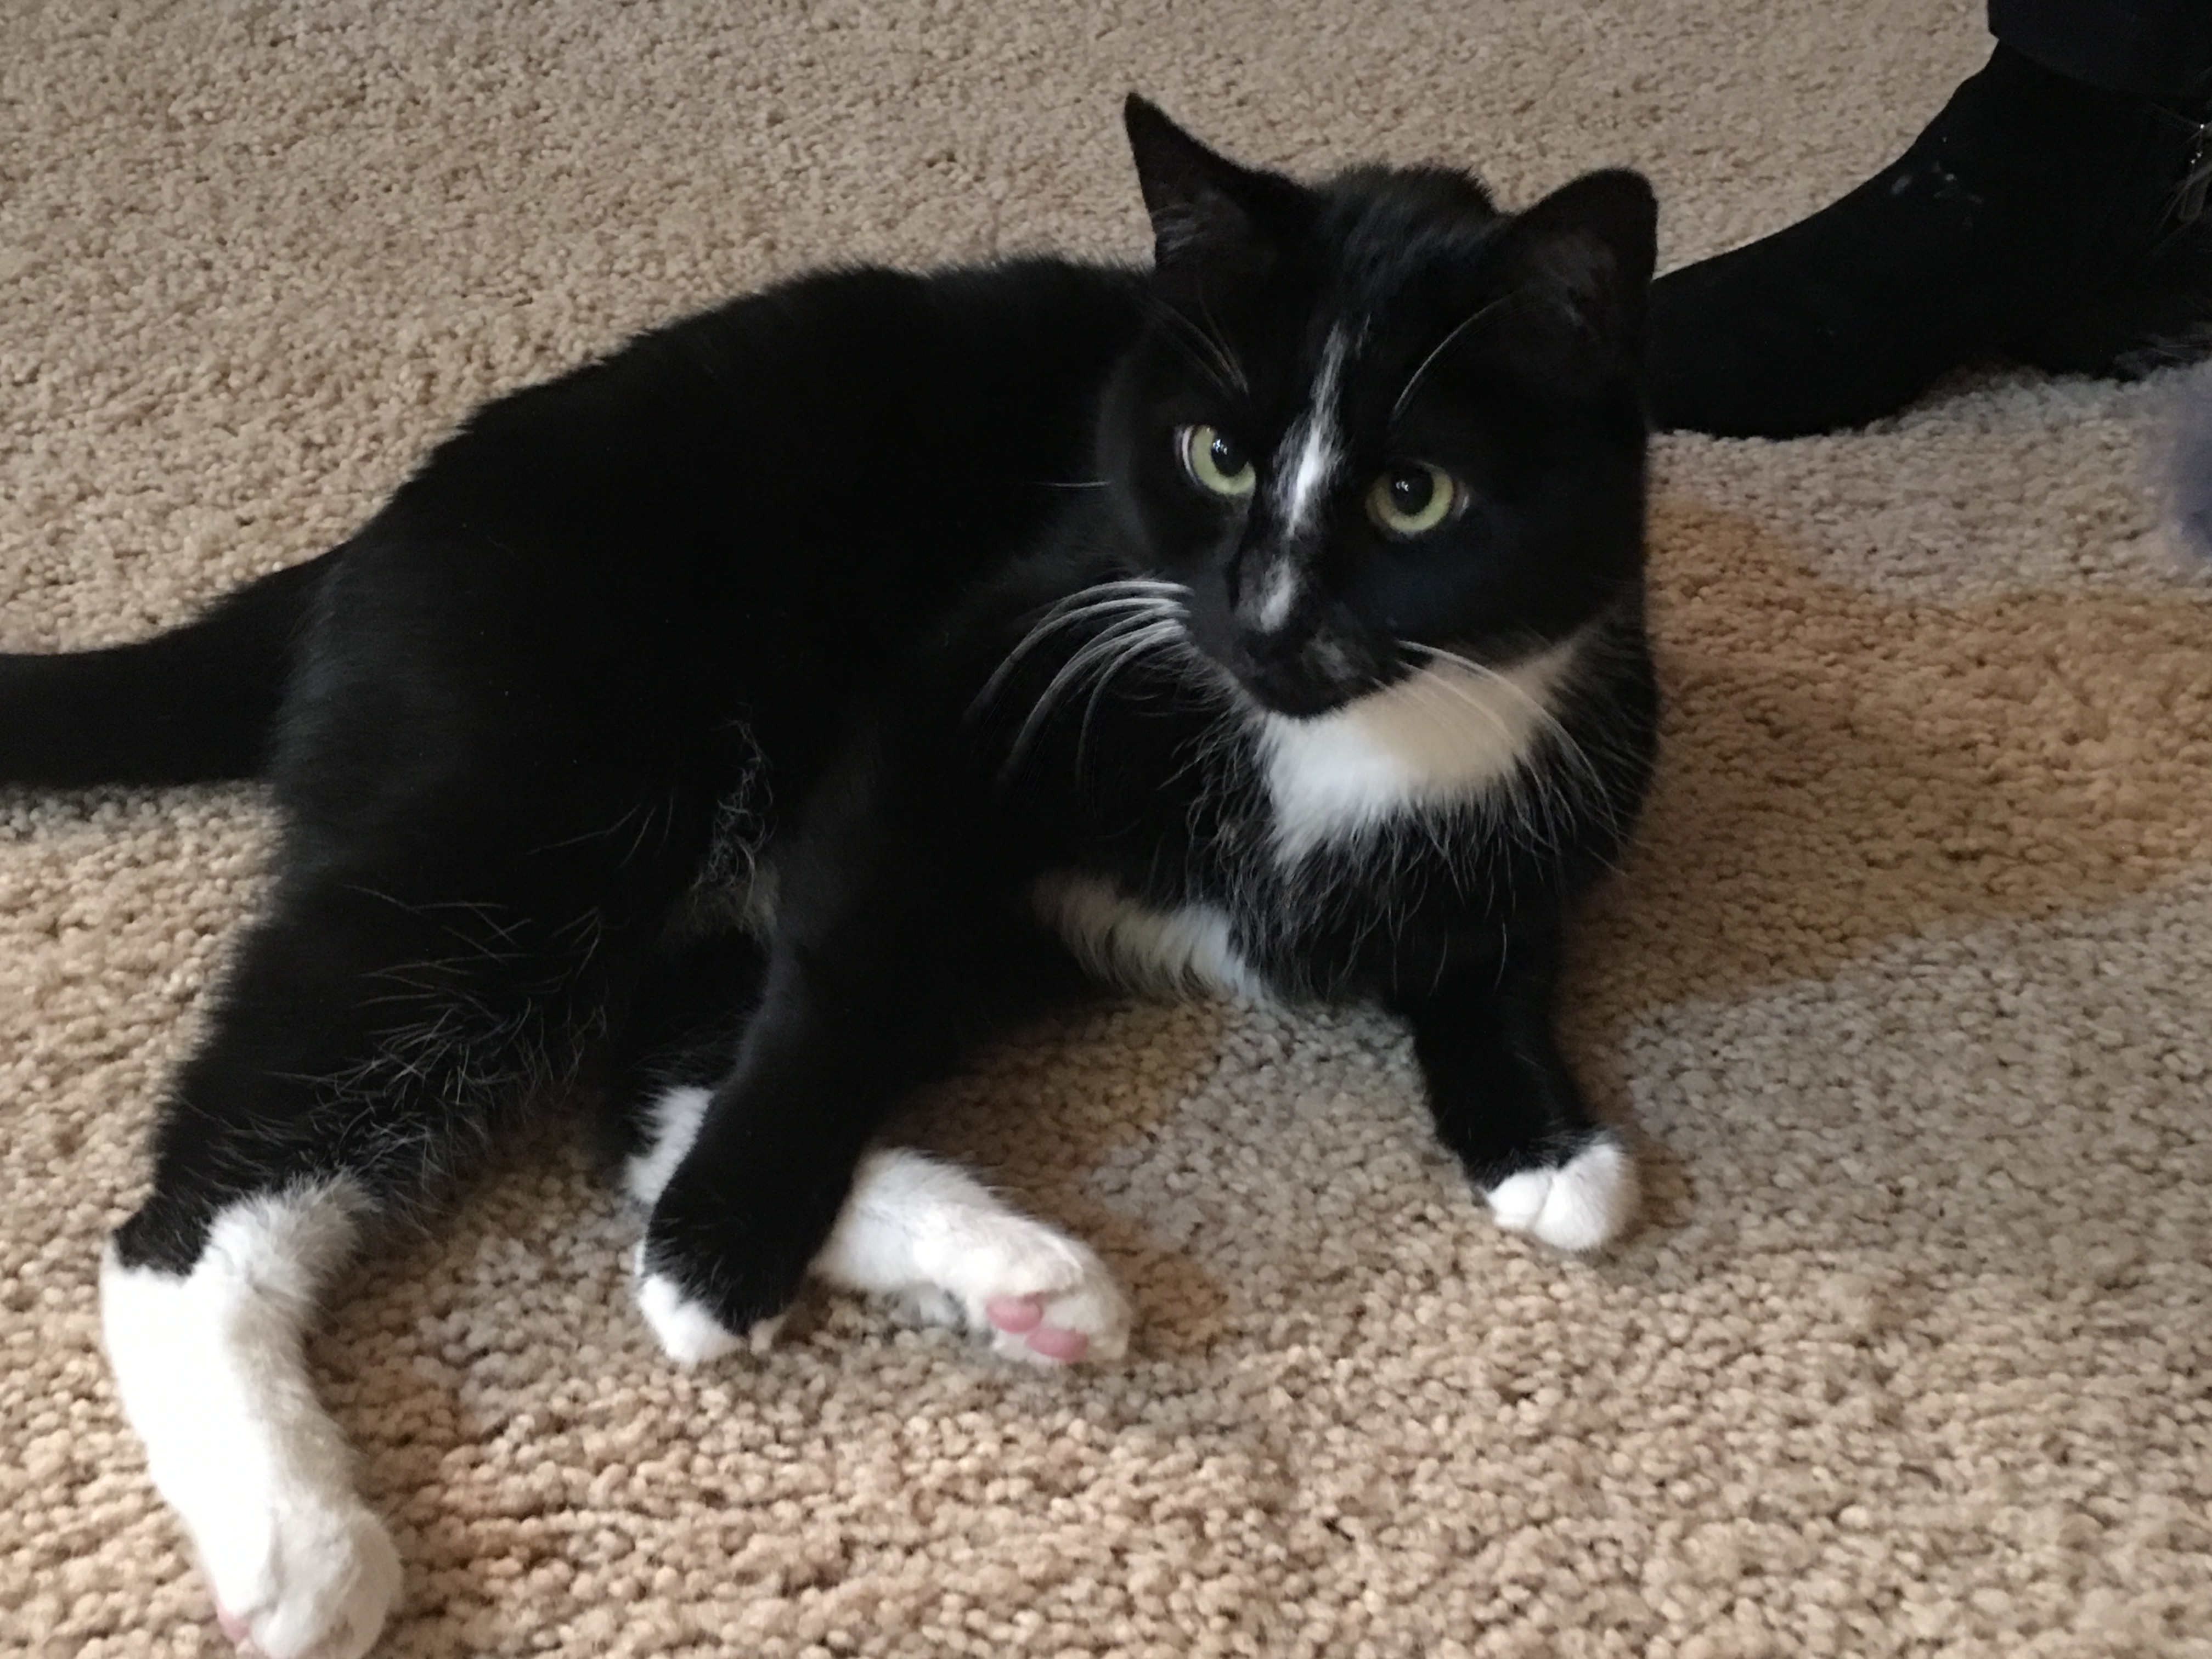 adoptable Cat in Denver,CO named Nitro